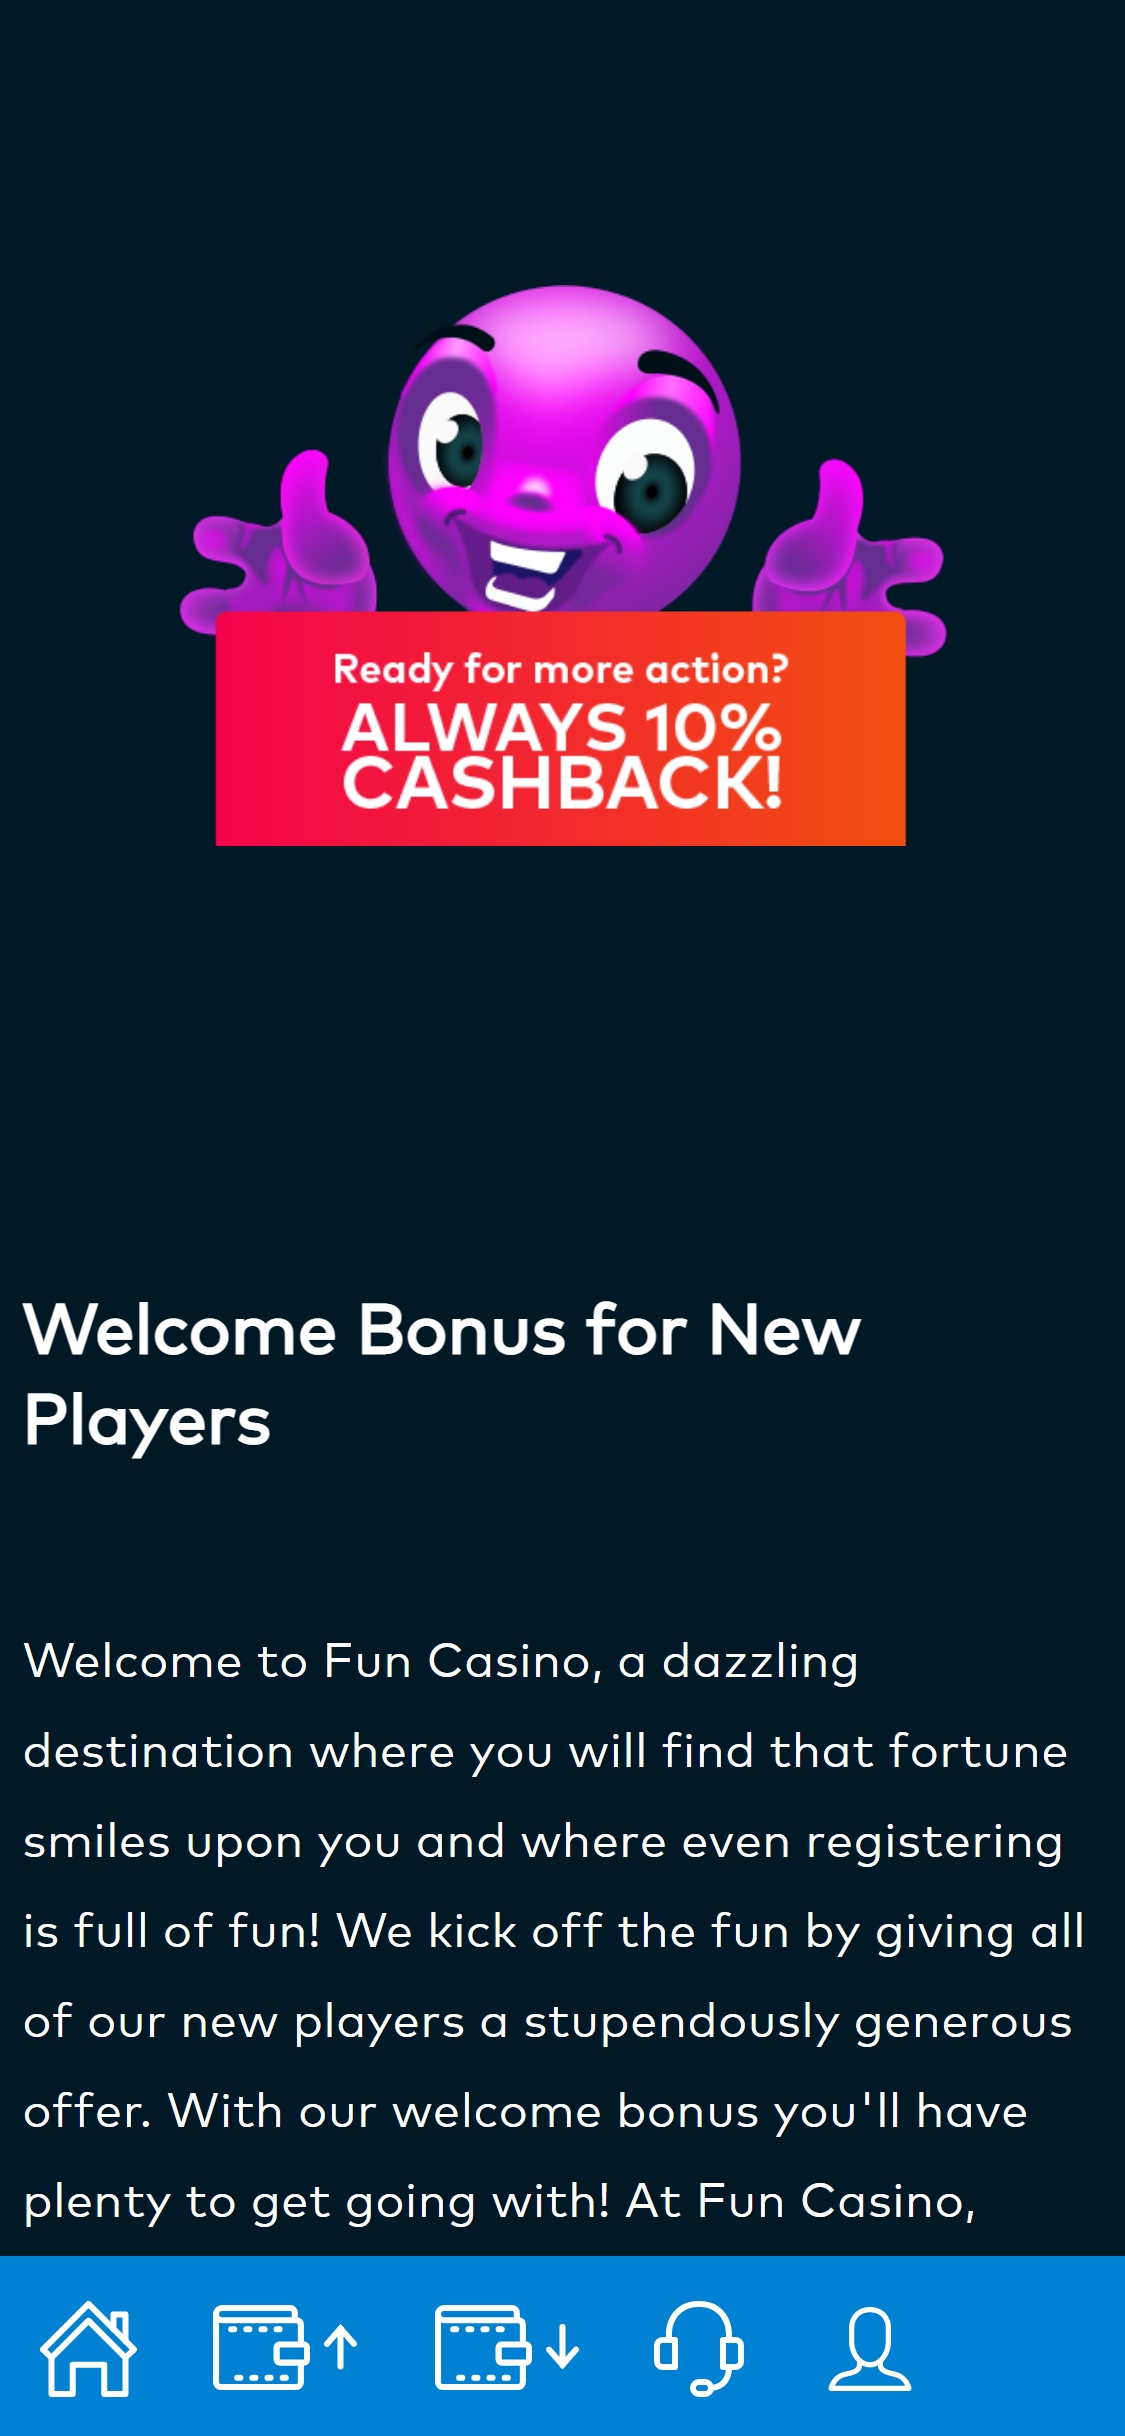 Fun Casino Mobile No Deposit Bonus Review